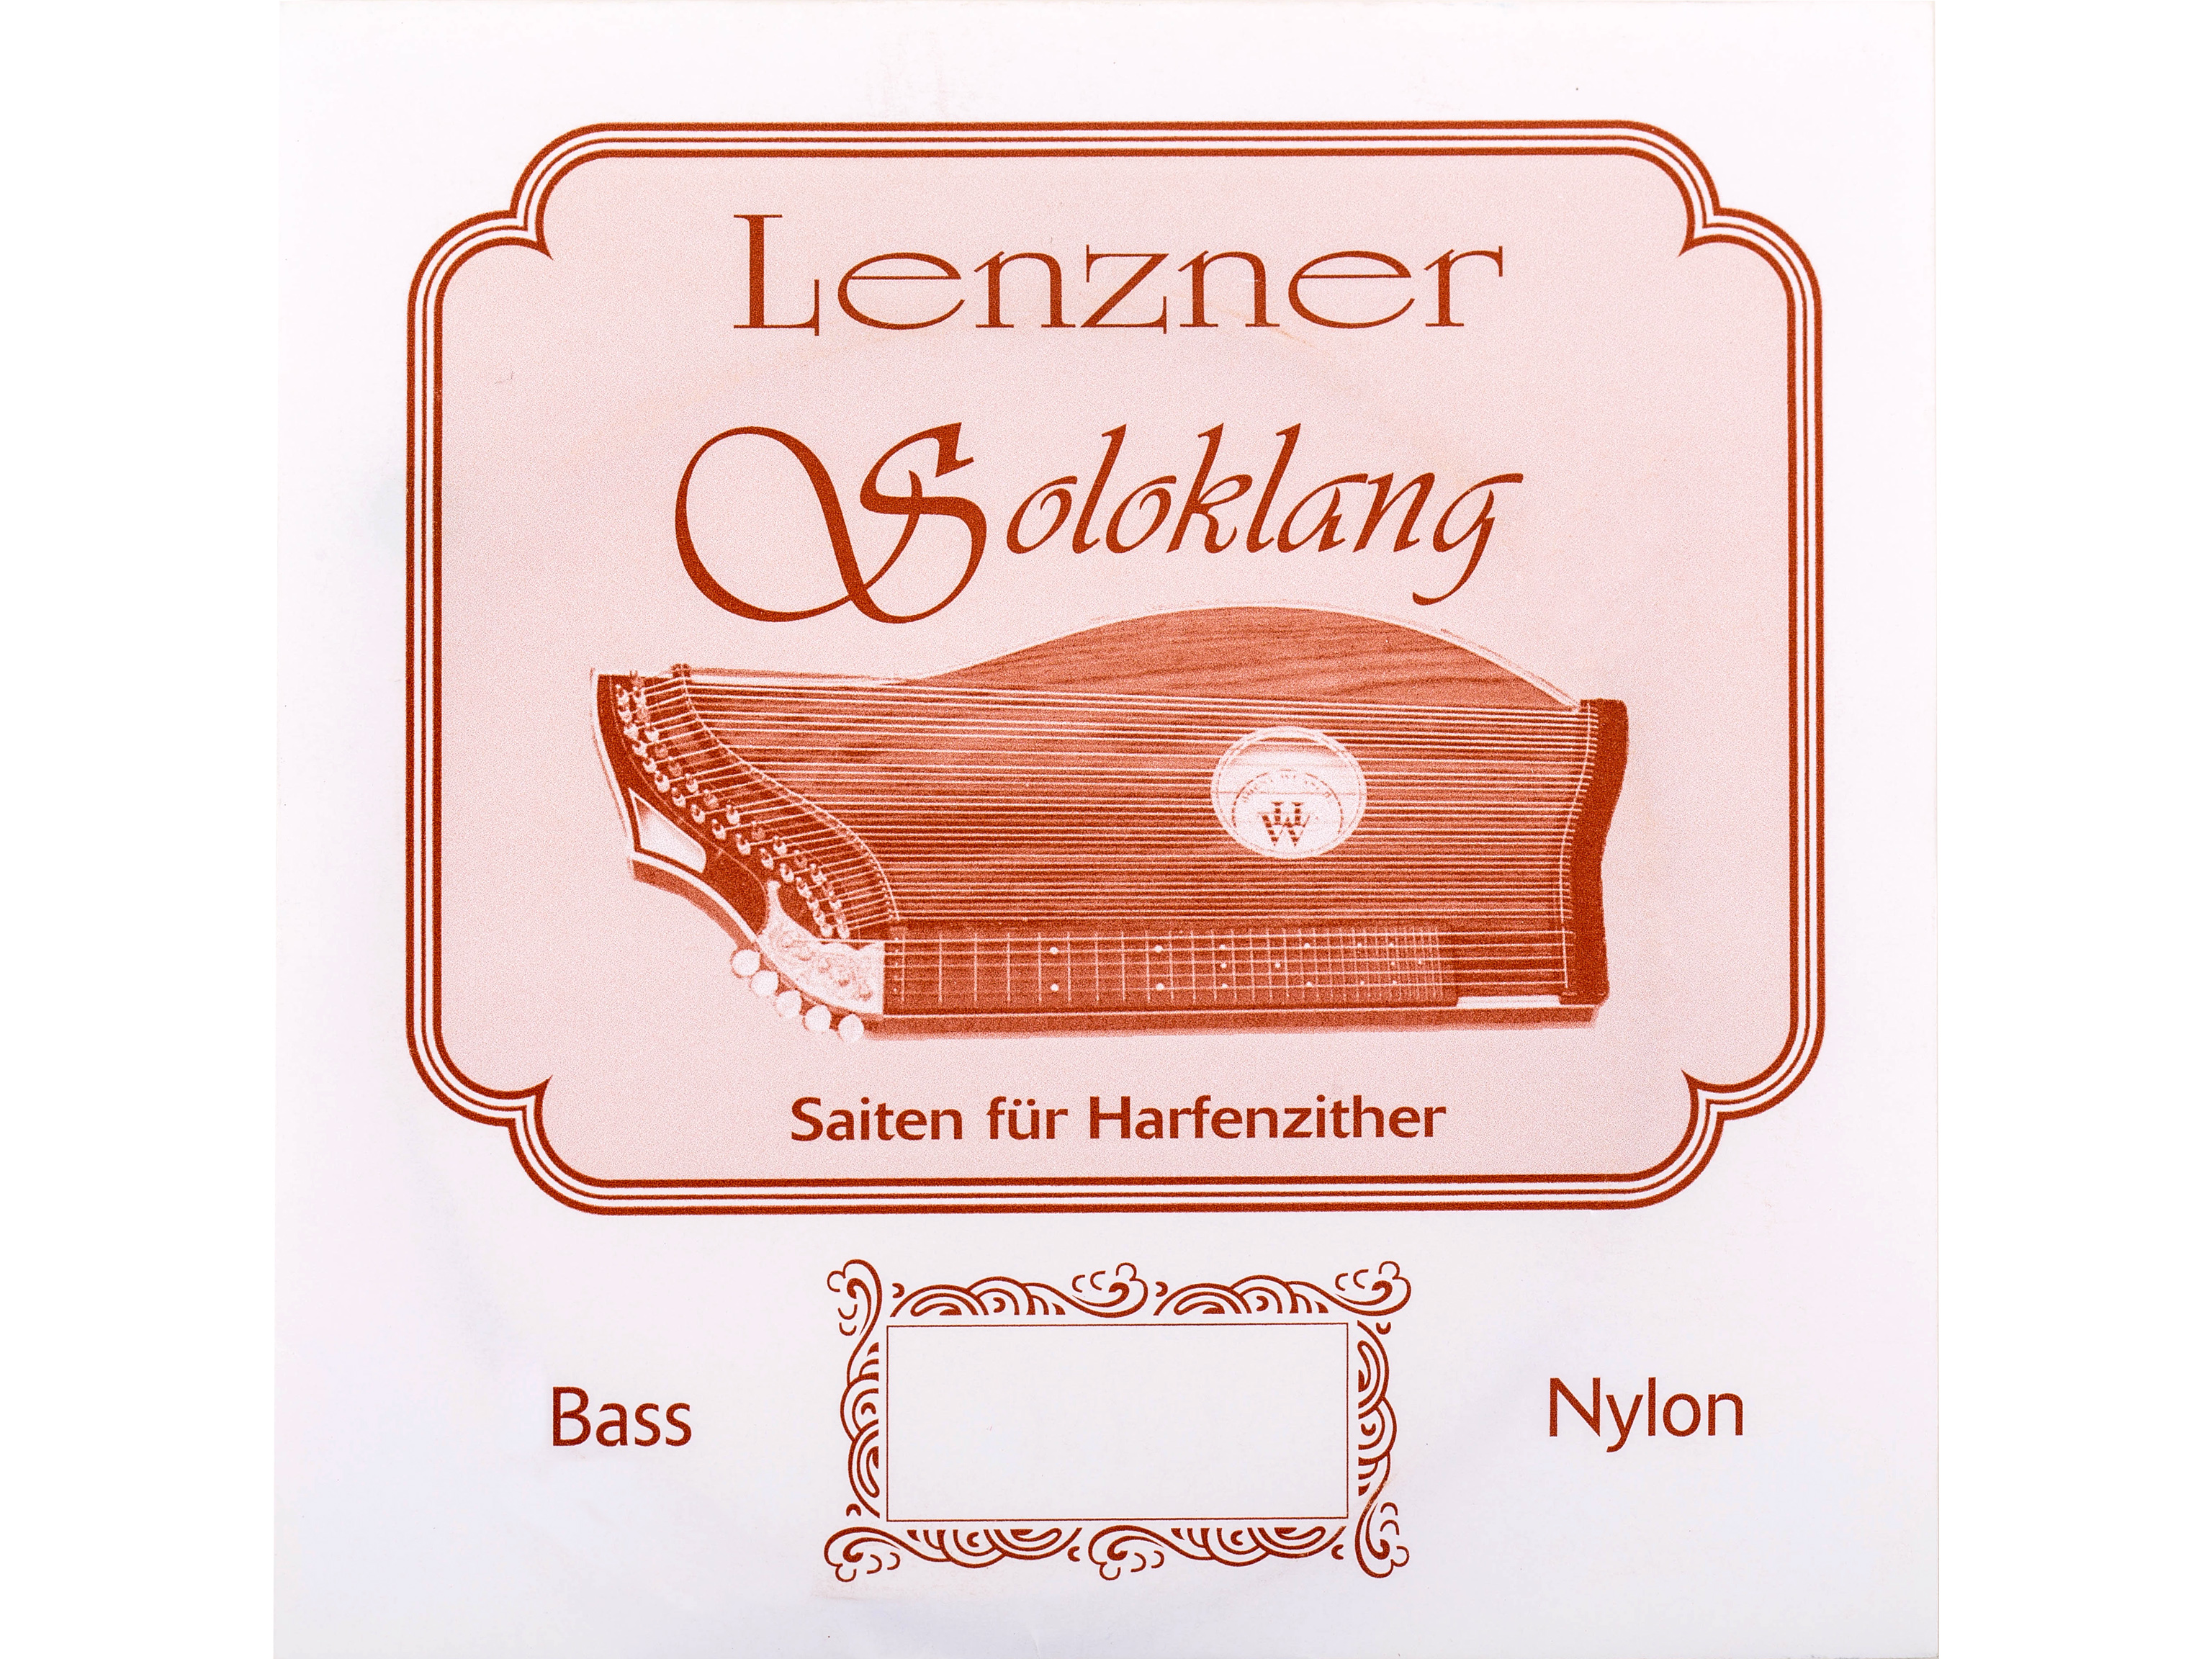 Lenzner 19. A Zithersaite Soloklang Bass